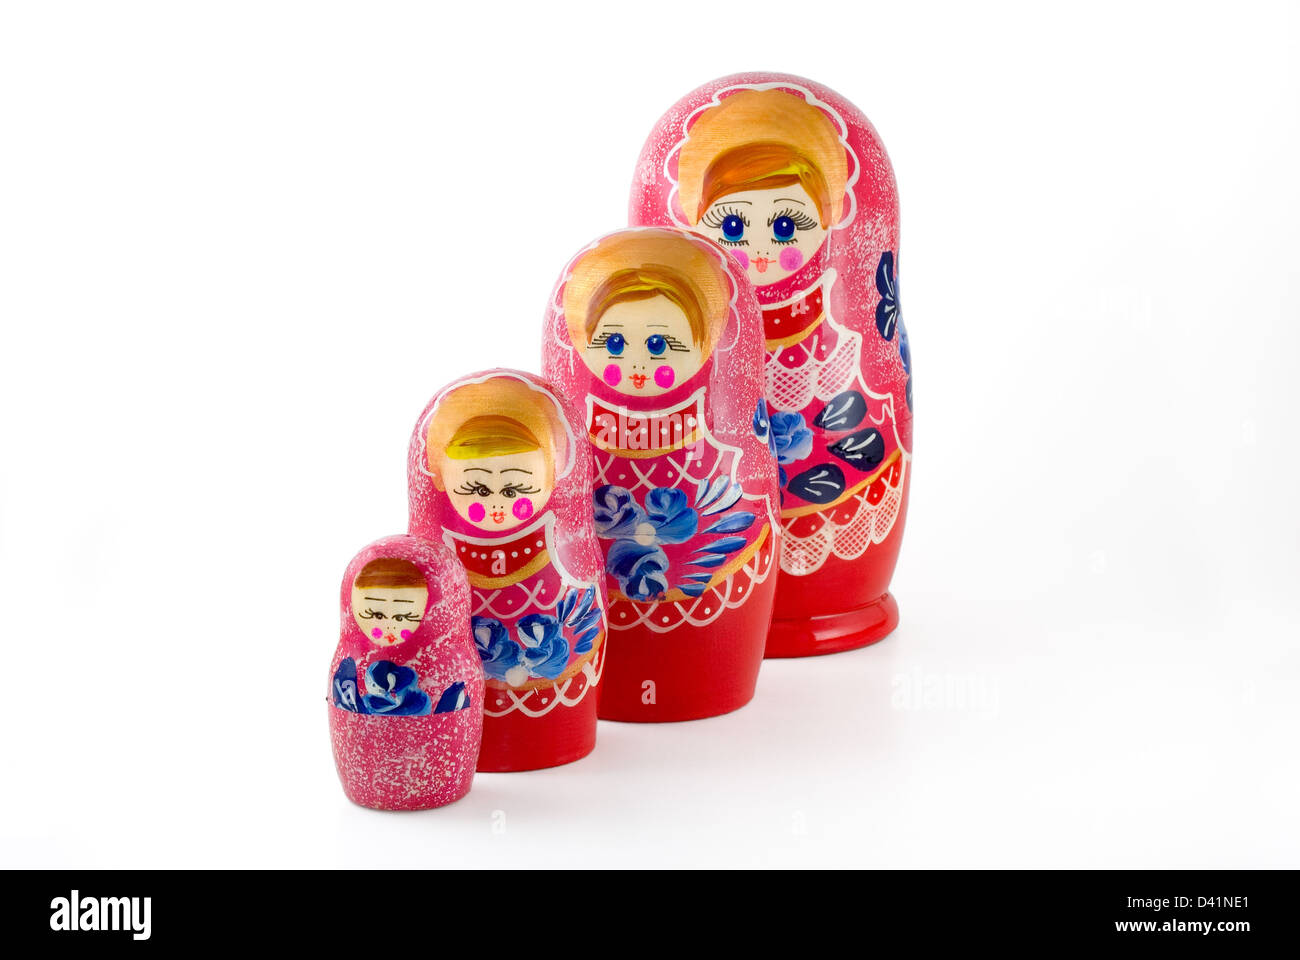 Les poupées russes sont imbriqués photographié sur white Banque D'Images